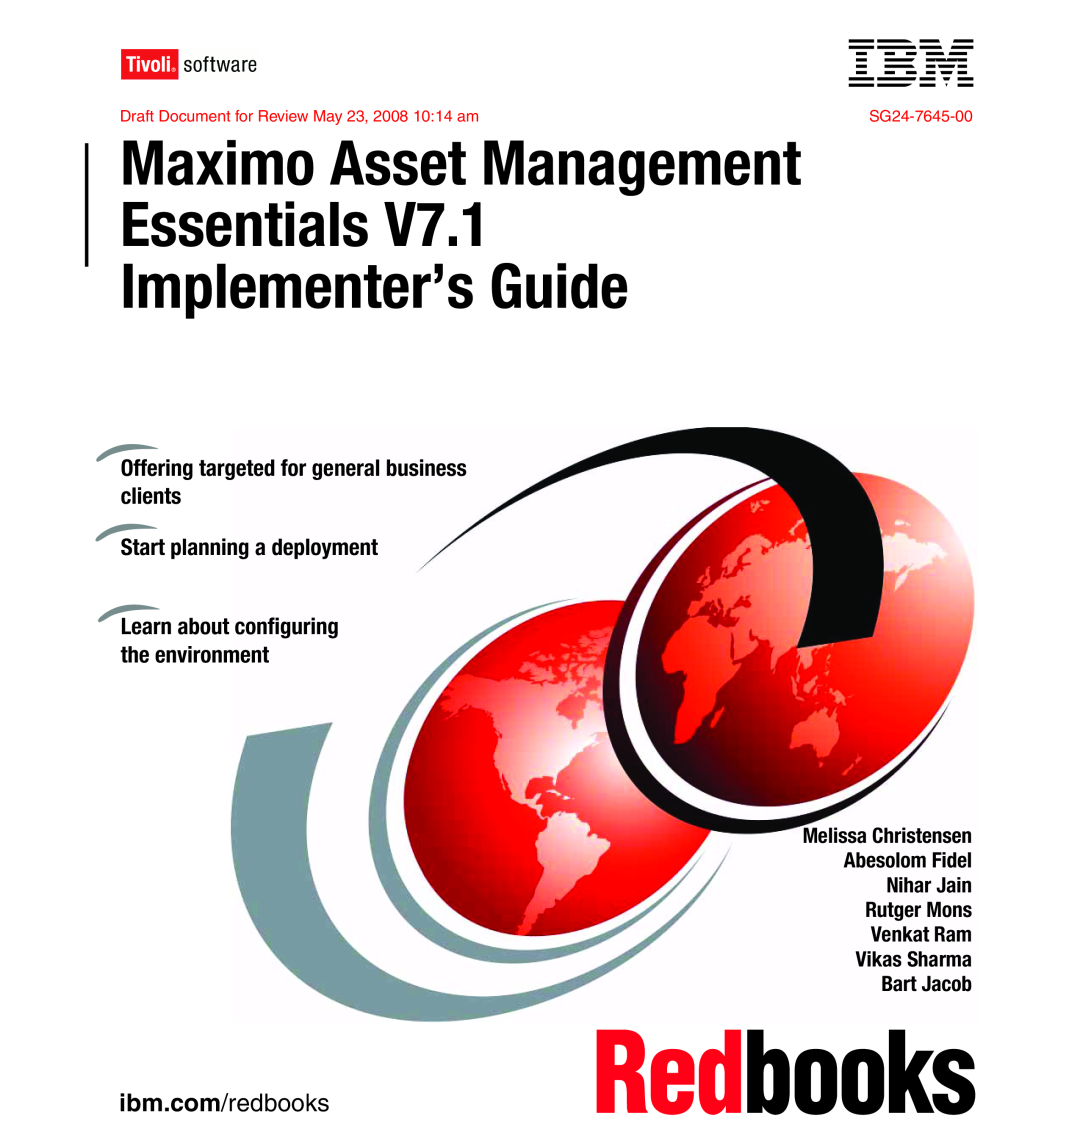 IBM SG24-7645-00 manual ibm.com/redbooks, Maximo Asset Management Essentials, Implementer’s Guide 